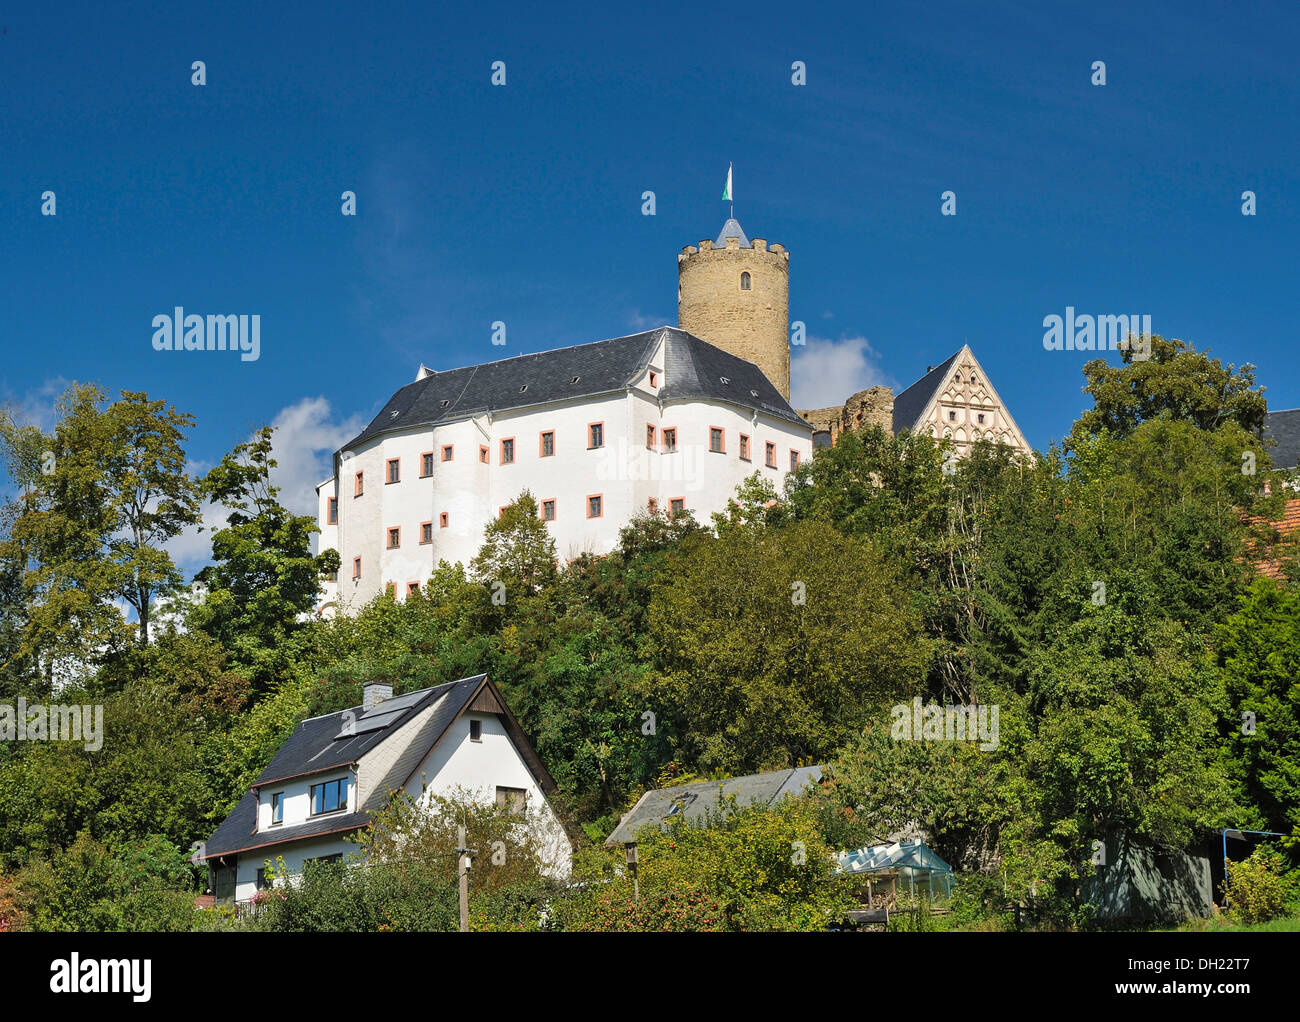 Burg Scharfenstein castle, Drebach, Saxony Stock Photo - Alamy